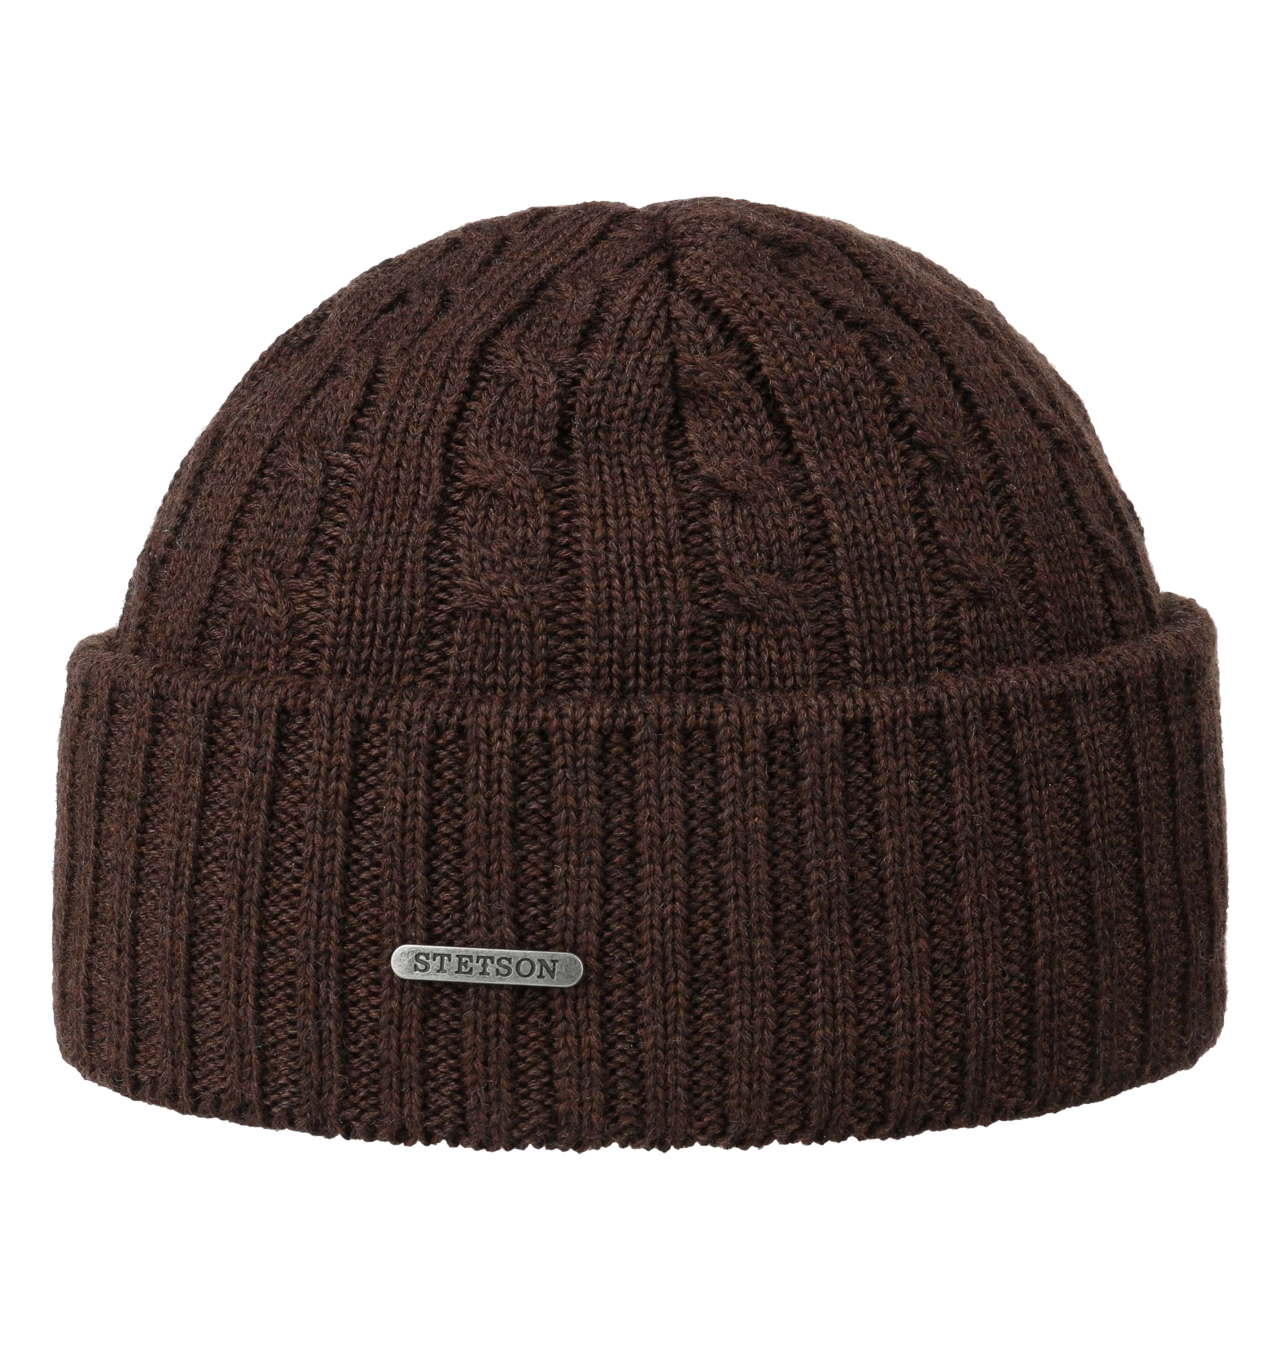 Stetson - Georgia Wool Knit Hat - Dark Brown